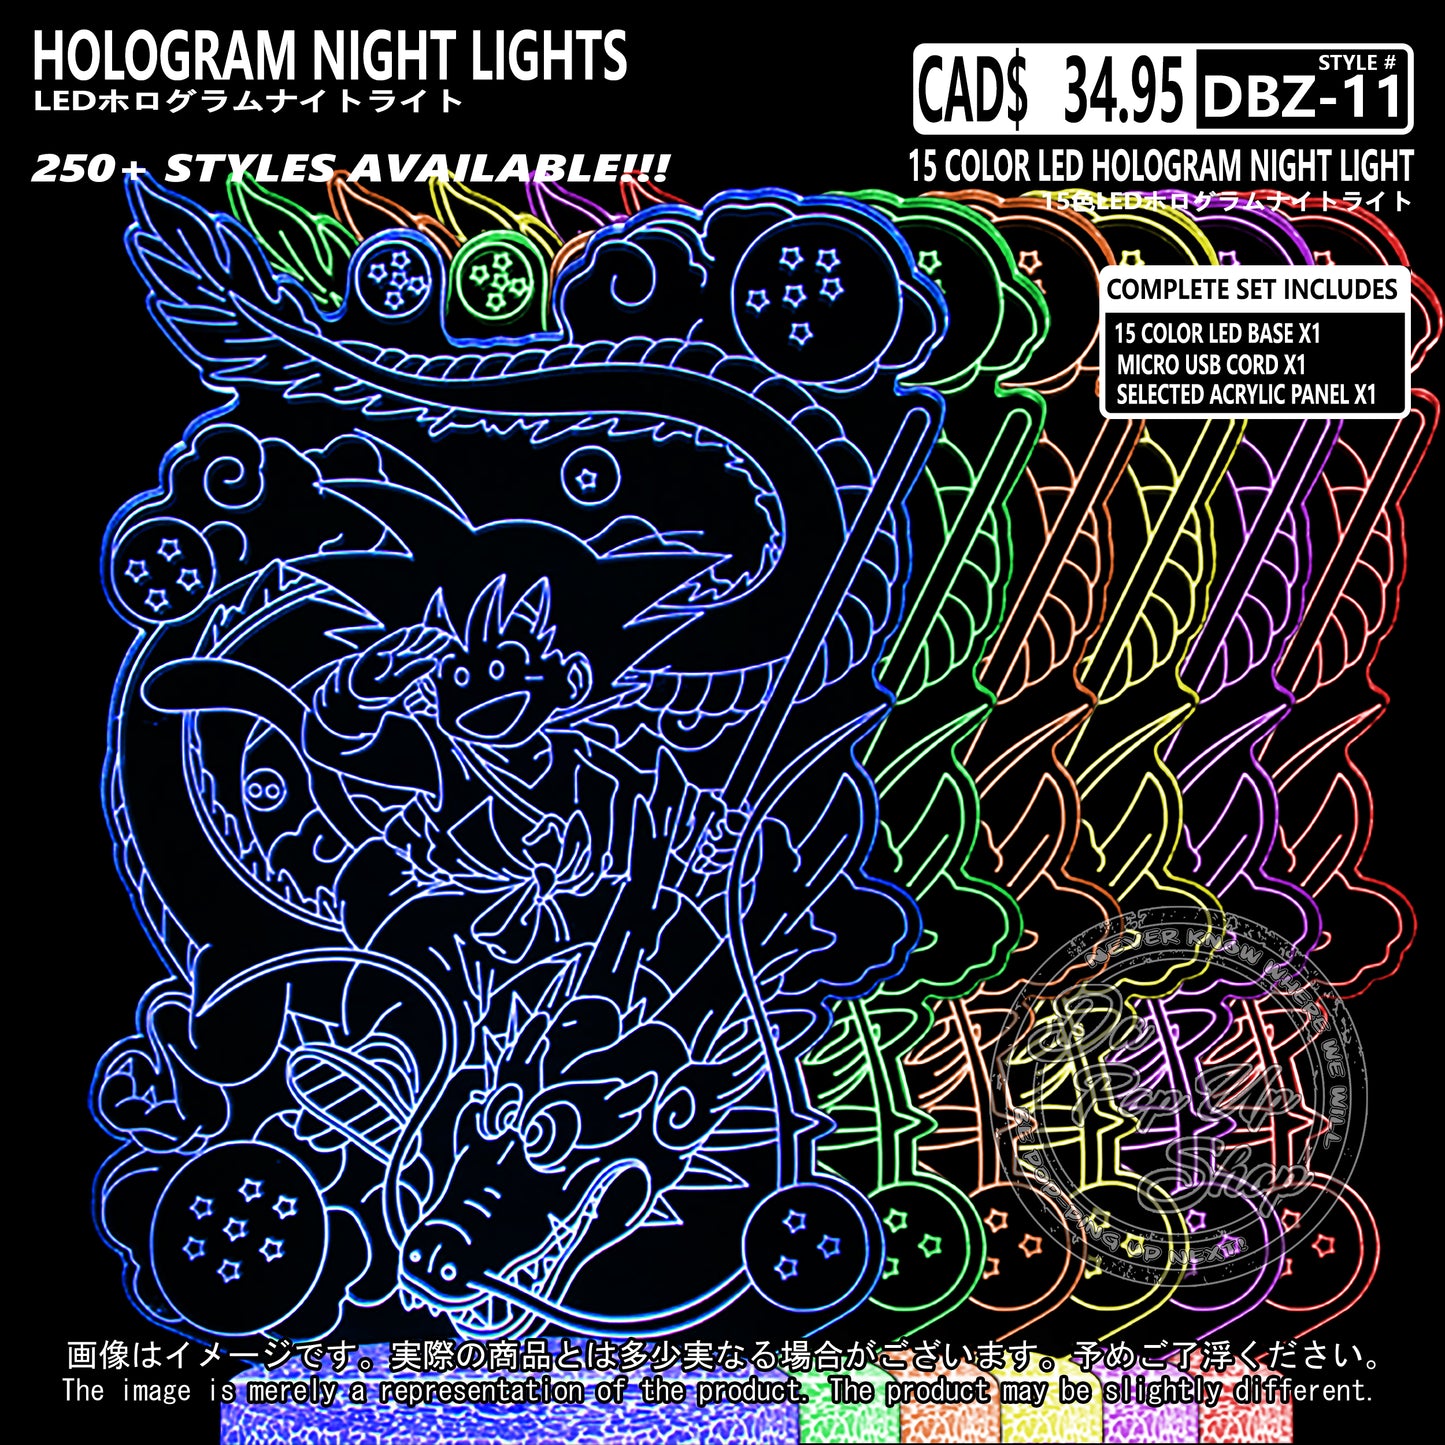 (DBZ-11) Dragon Ball Z Hologram LED Night Light